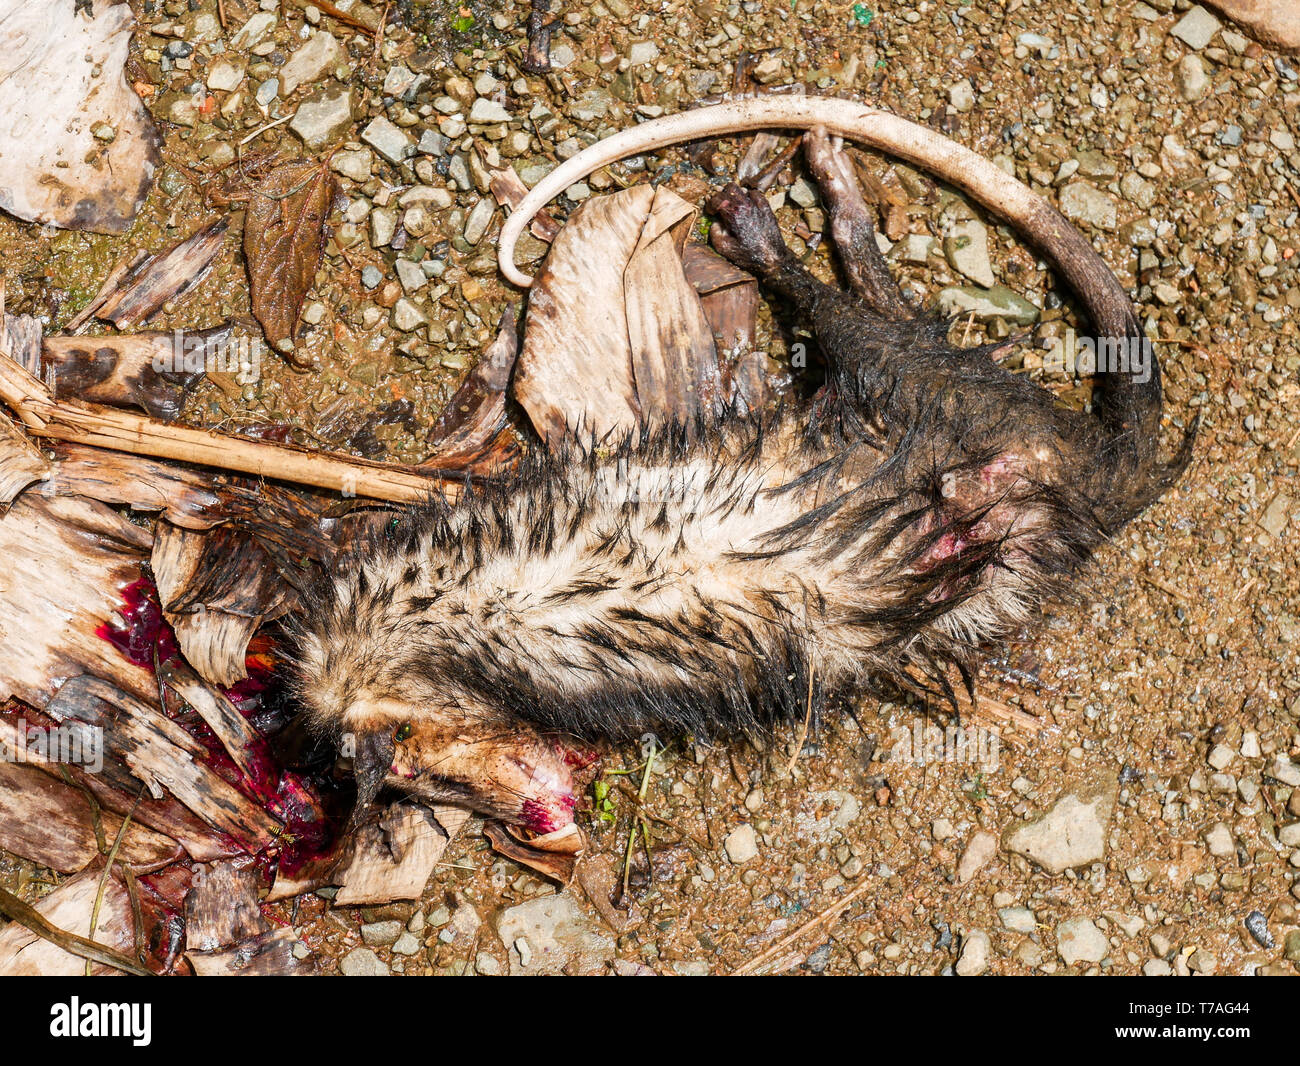 Corps mort d'un oppossum Banque D'Images